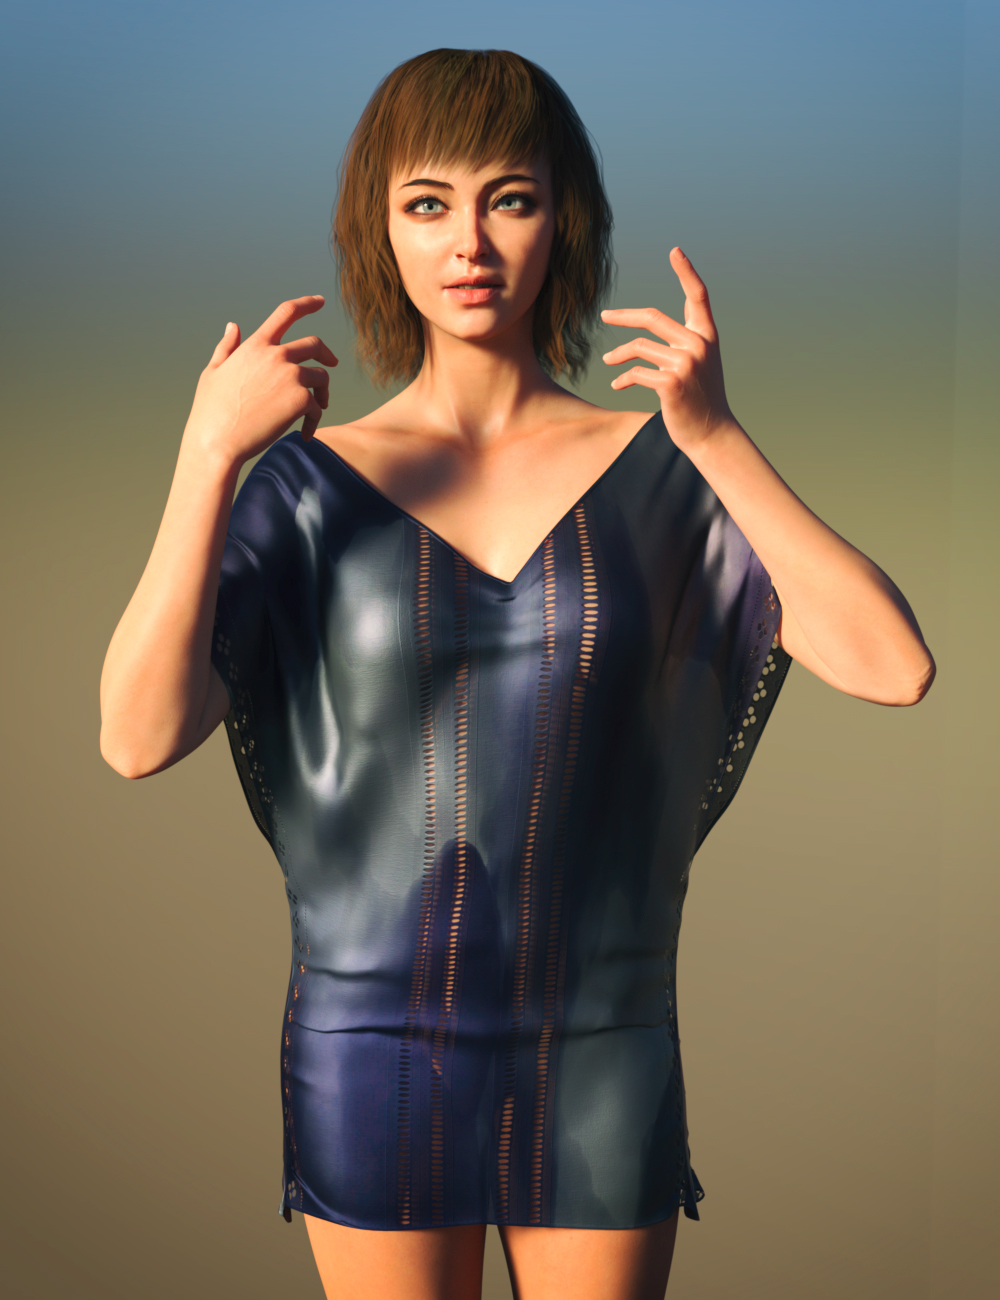 Nasha HD for Genesis 8.1 Female by: Goanna, 3D Models by Daz 3D